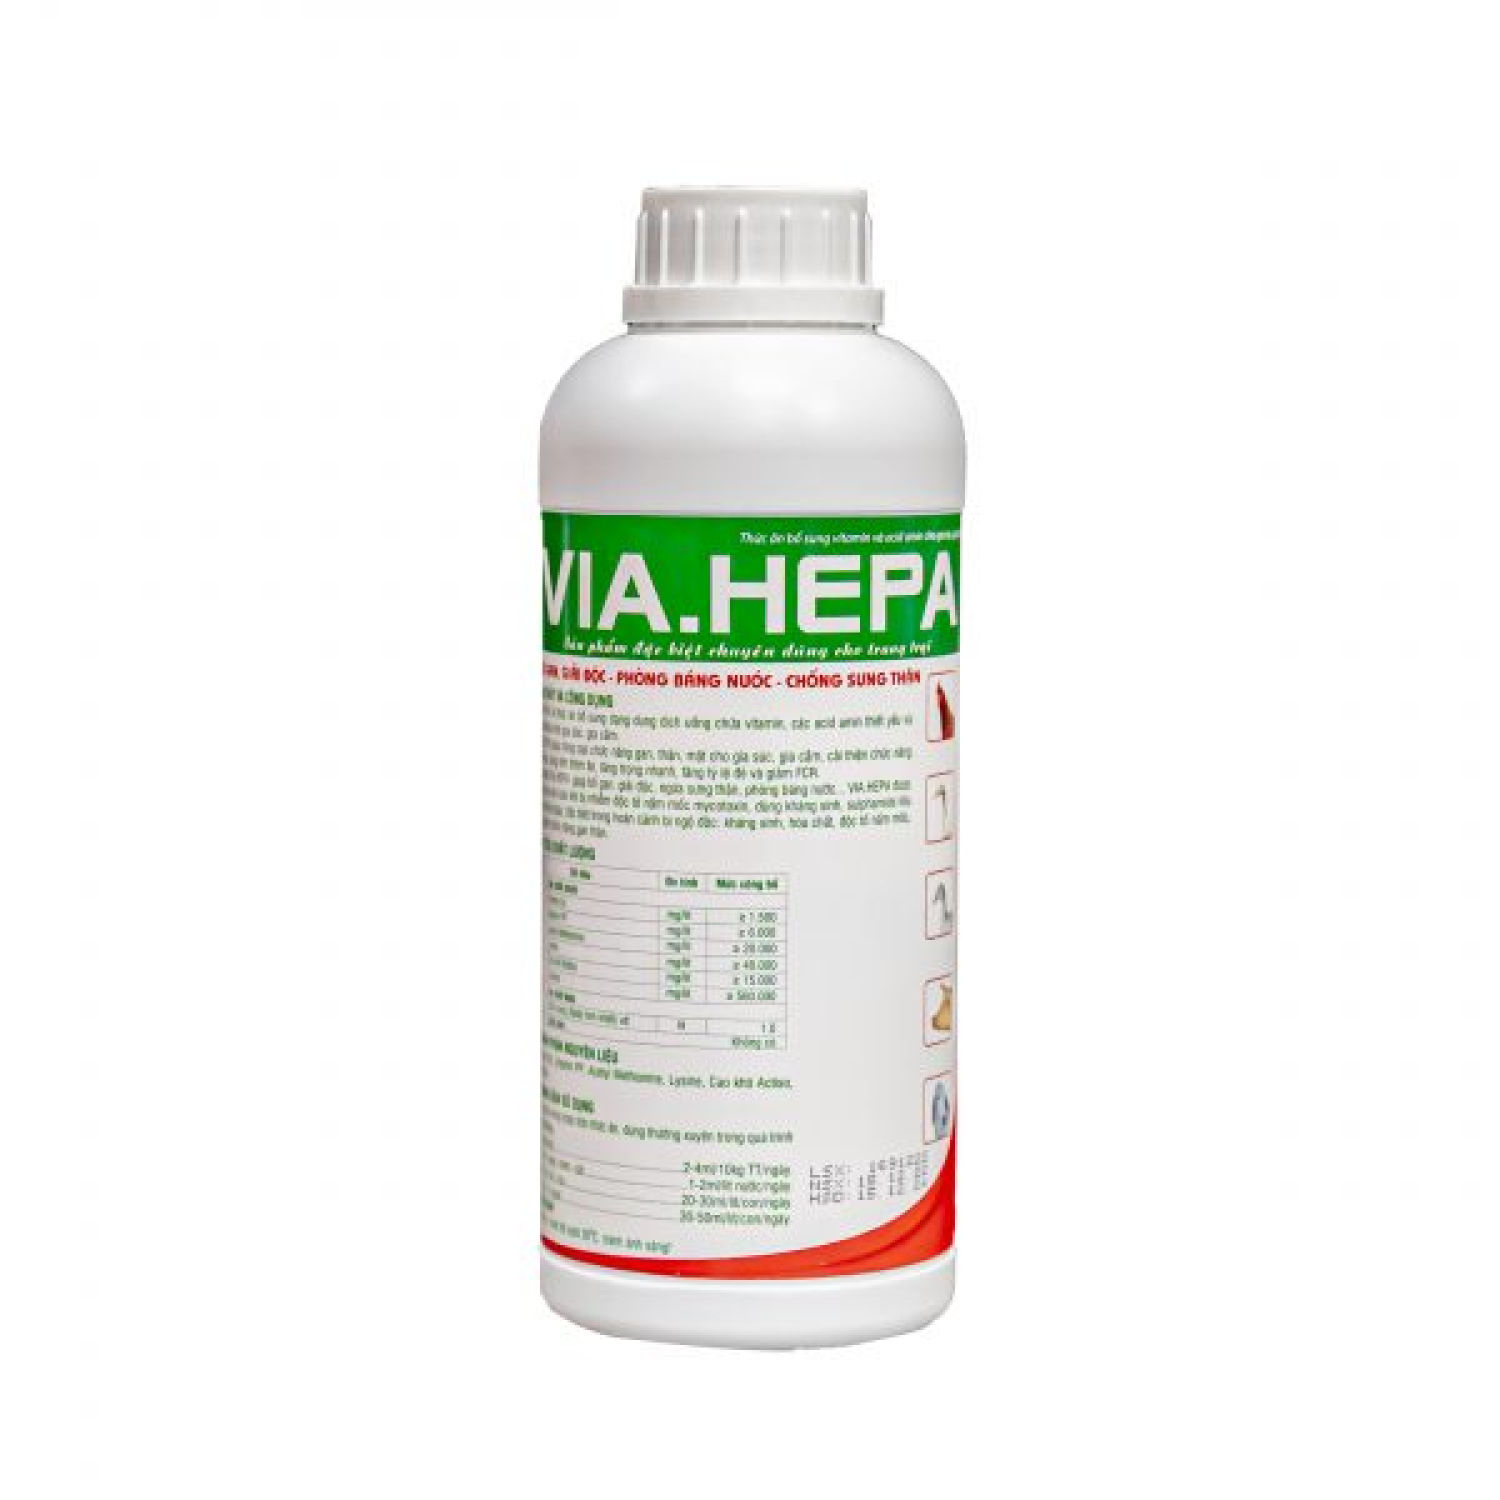 VIA.HEPA chai 1l -  Bổ gan, giải độc, phòng tích nước, chống sưng thận dùng trong thú y